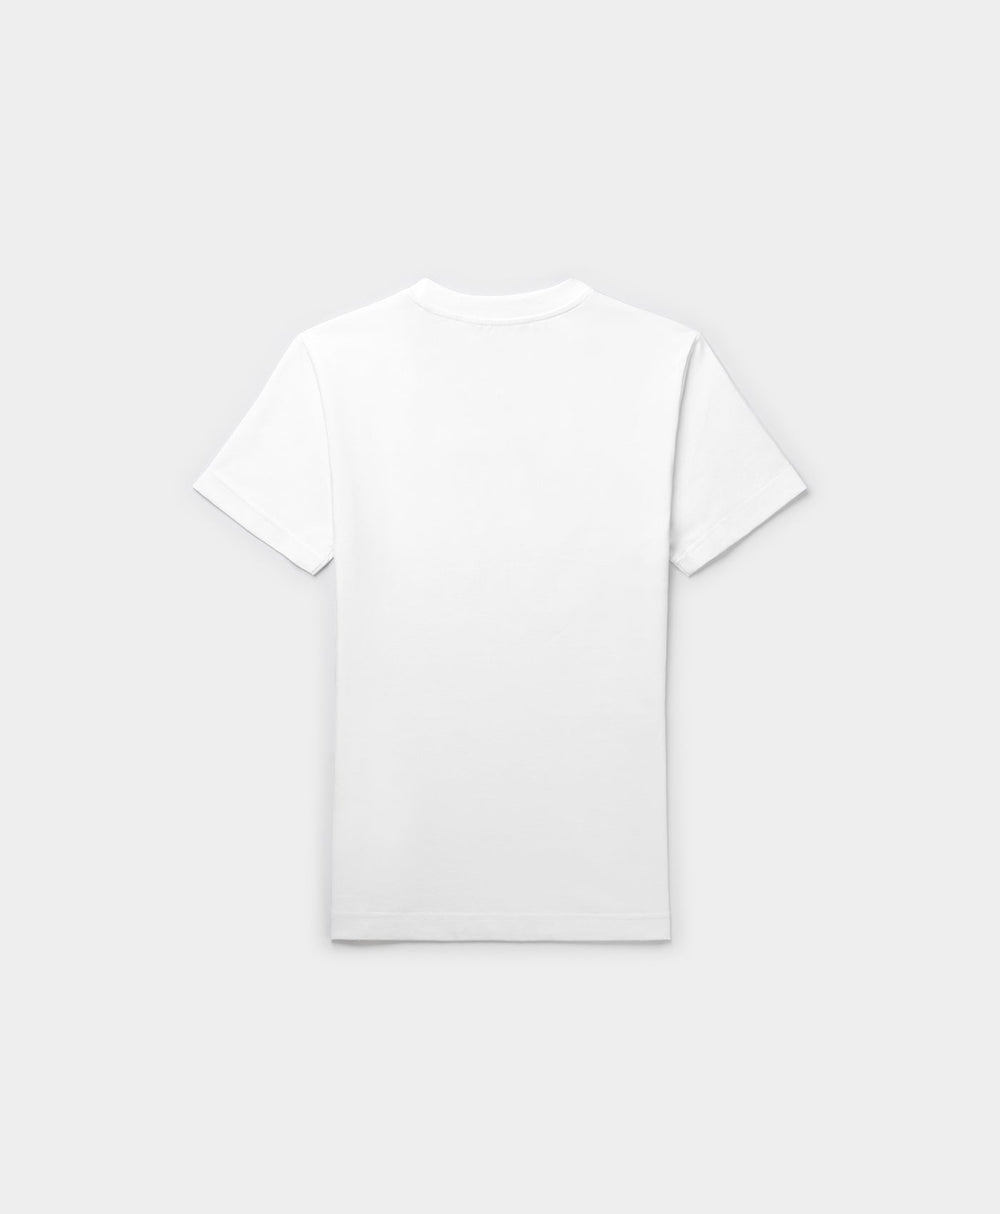 DP - White Emefa T-Shirt - Packshot - Rear